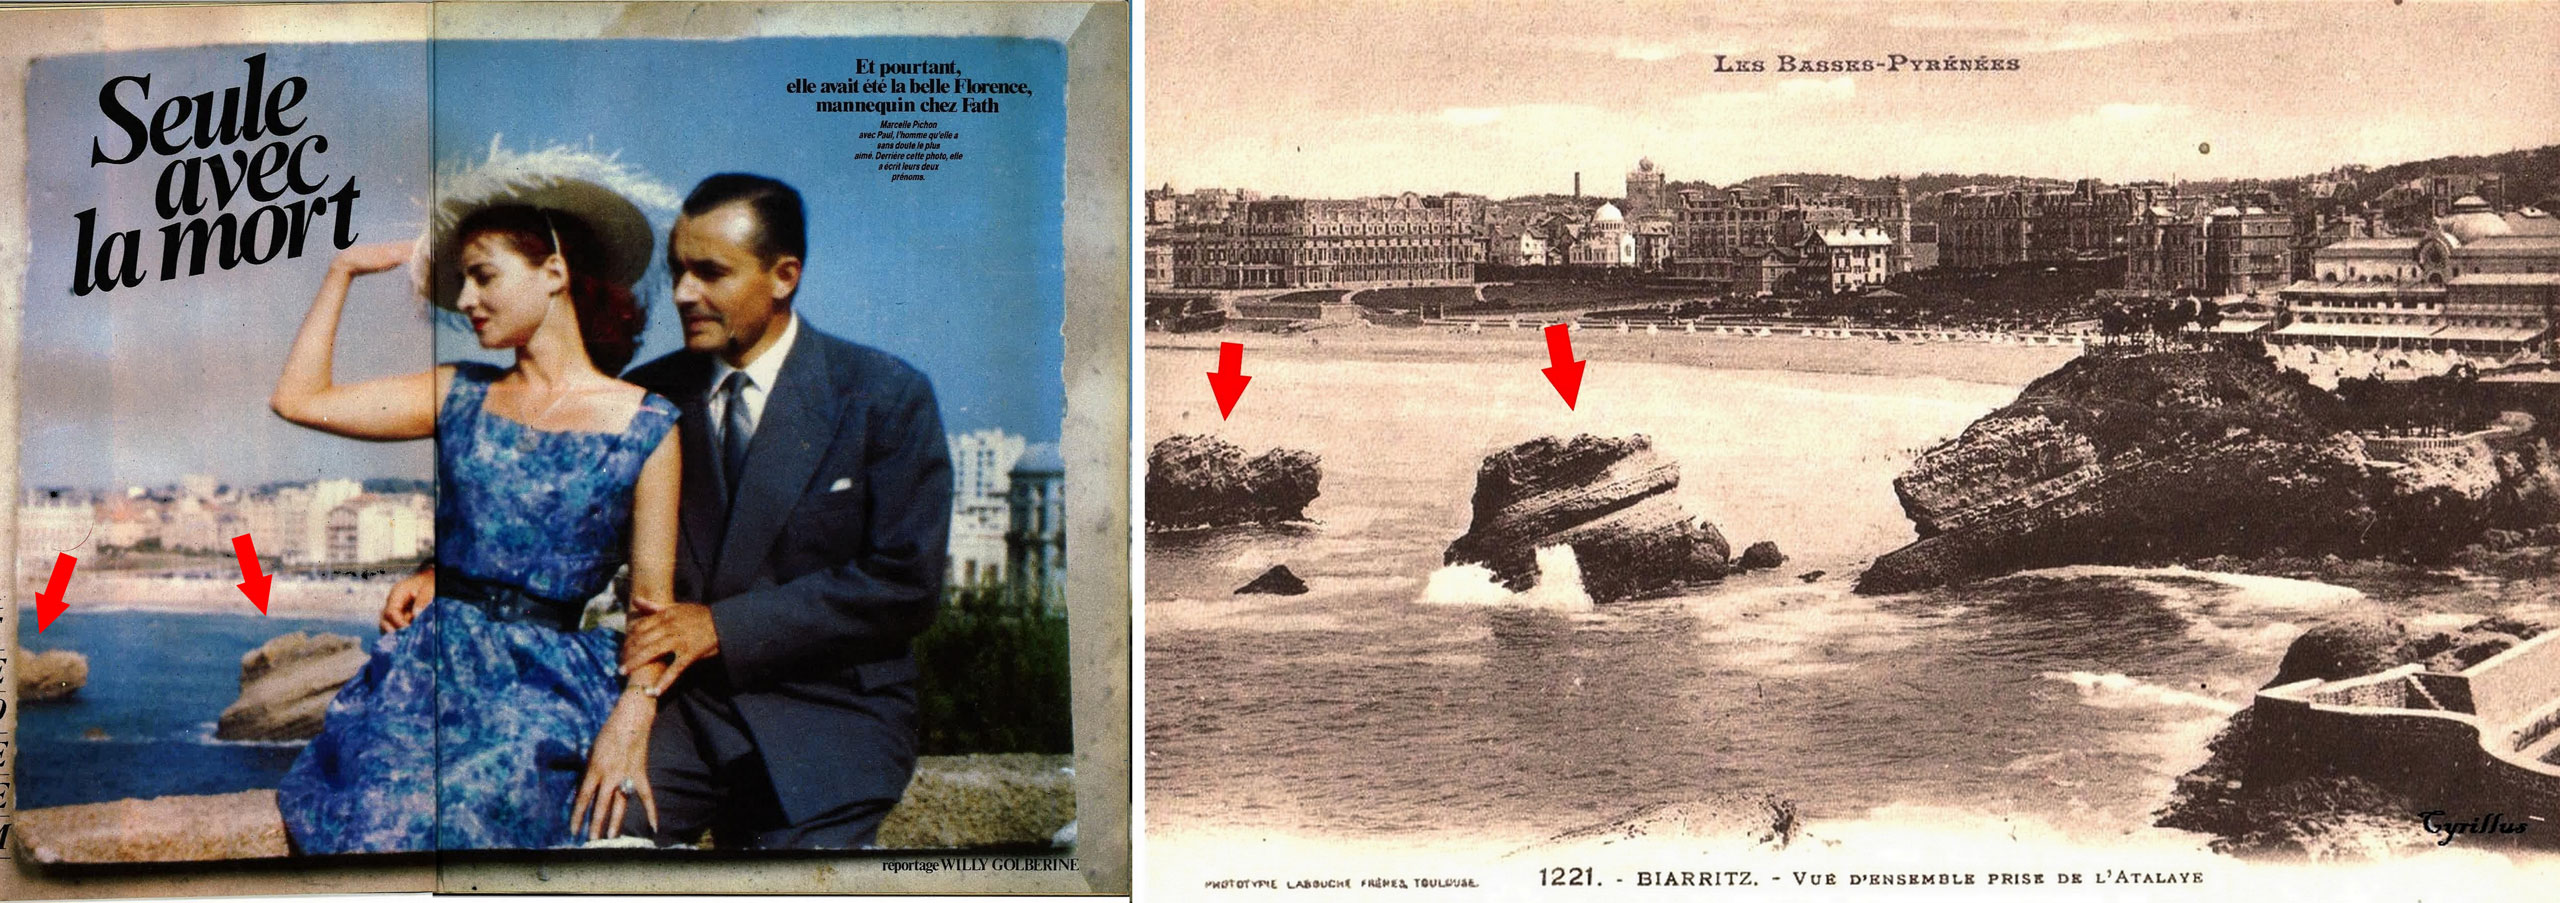 Sur la photo de Marcelle (et Paul), datée du début des années 1960, parue dans Paris- Match, deux rochers à l’arrière-plan permettent d’identifier que Marcelle et Paul se trouvaient à… Biarritz !<br><br>